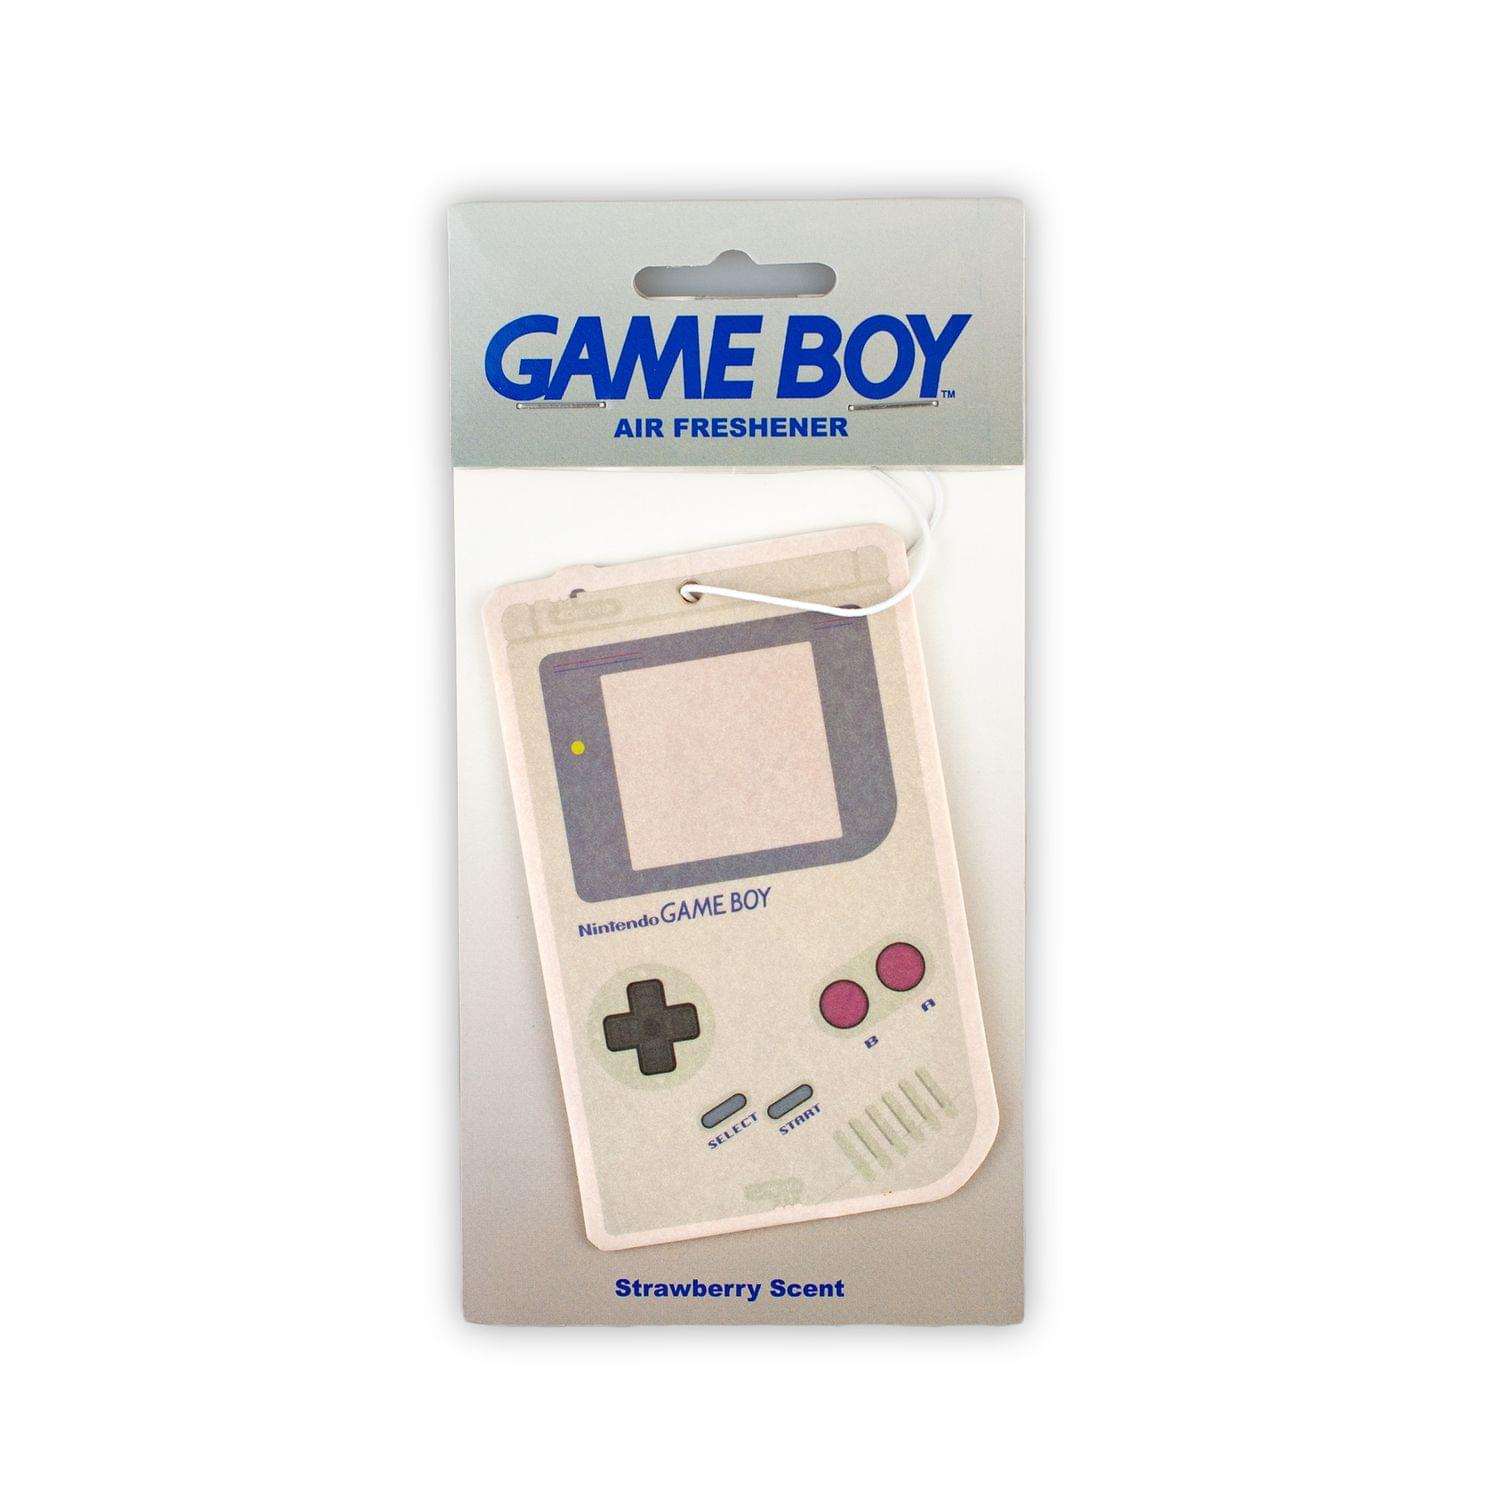 Nintendo Game Boy Strawberry Car Air Freshener | Official Nintendo Collectible